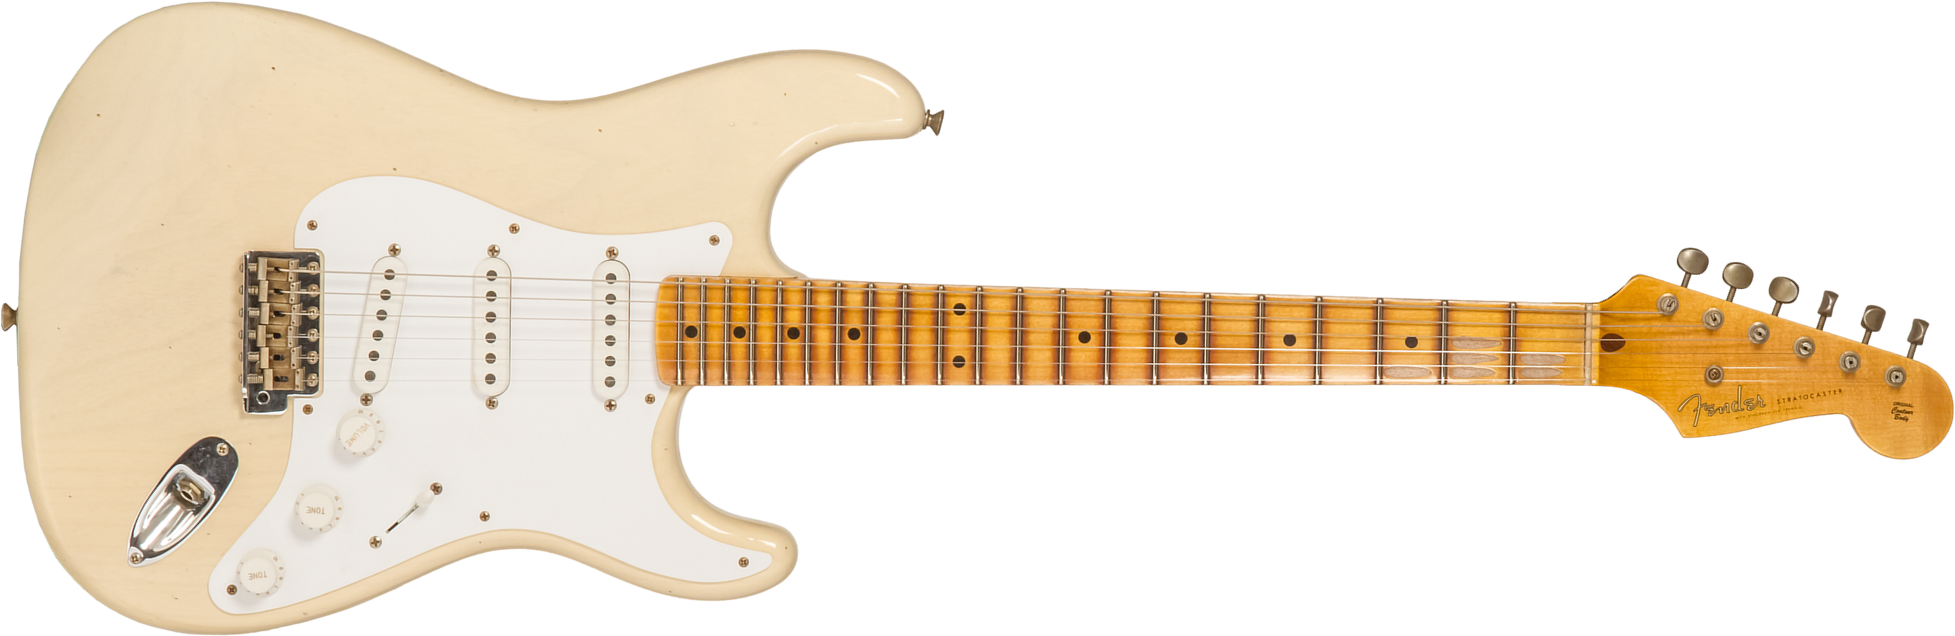 Fender Custom Shop Strat 1954 70th Anniv. 3s Trem Mn #xn4159 - Journeyman Relic Vintage Blonde - Elektrische gitaar in Str-vorm - Main picture